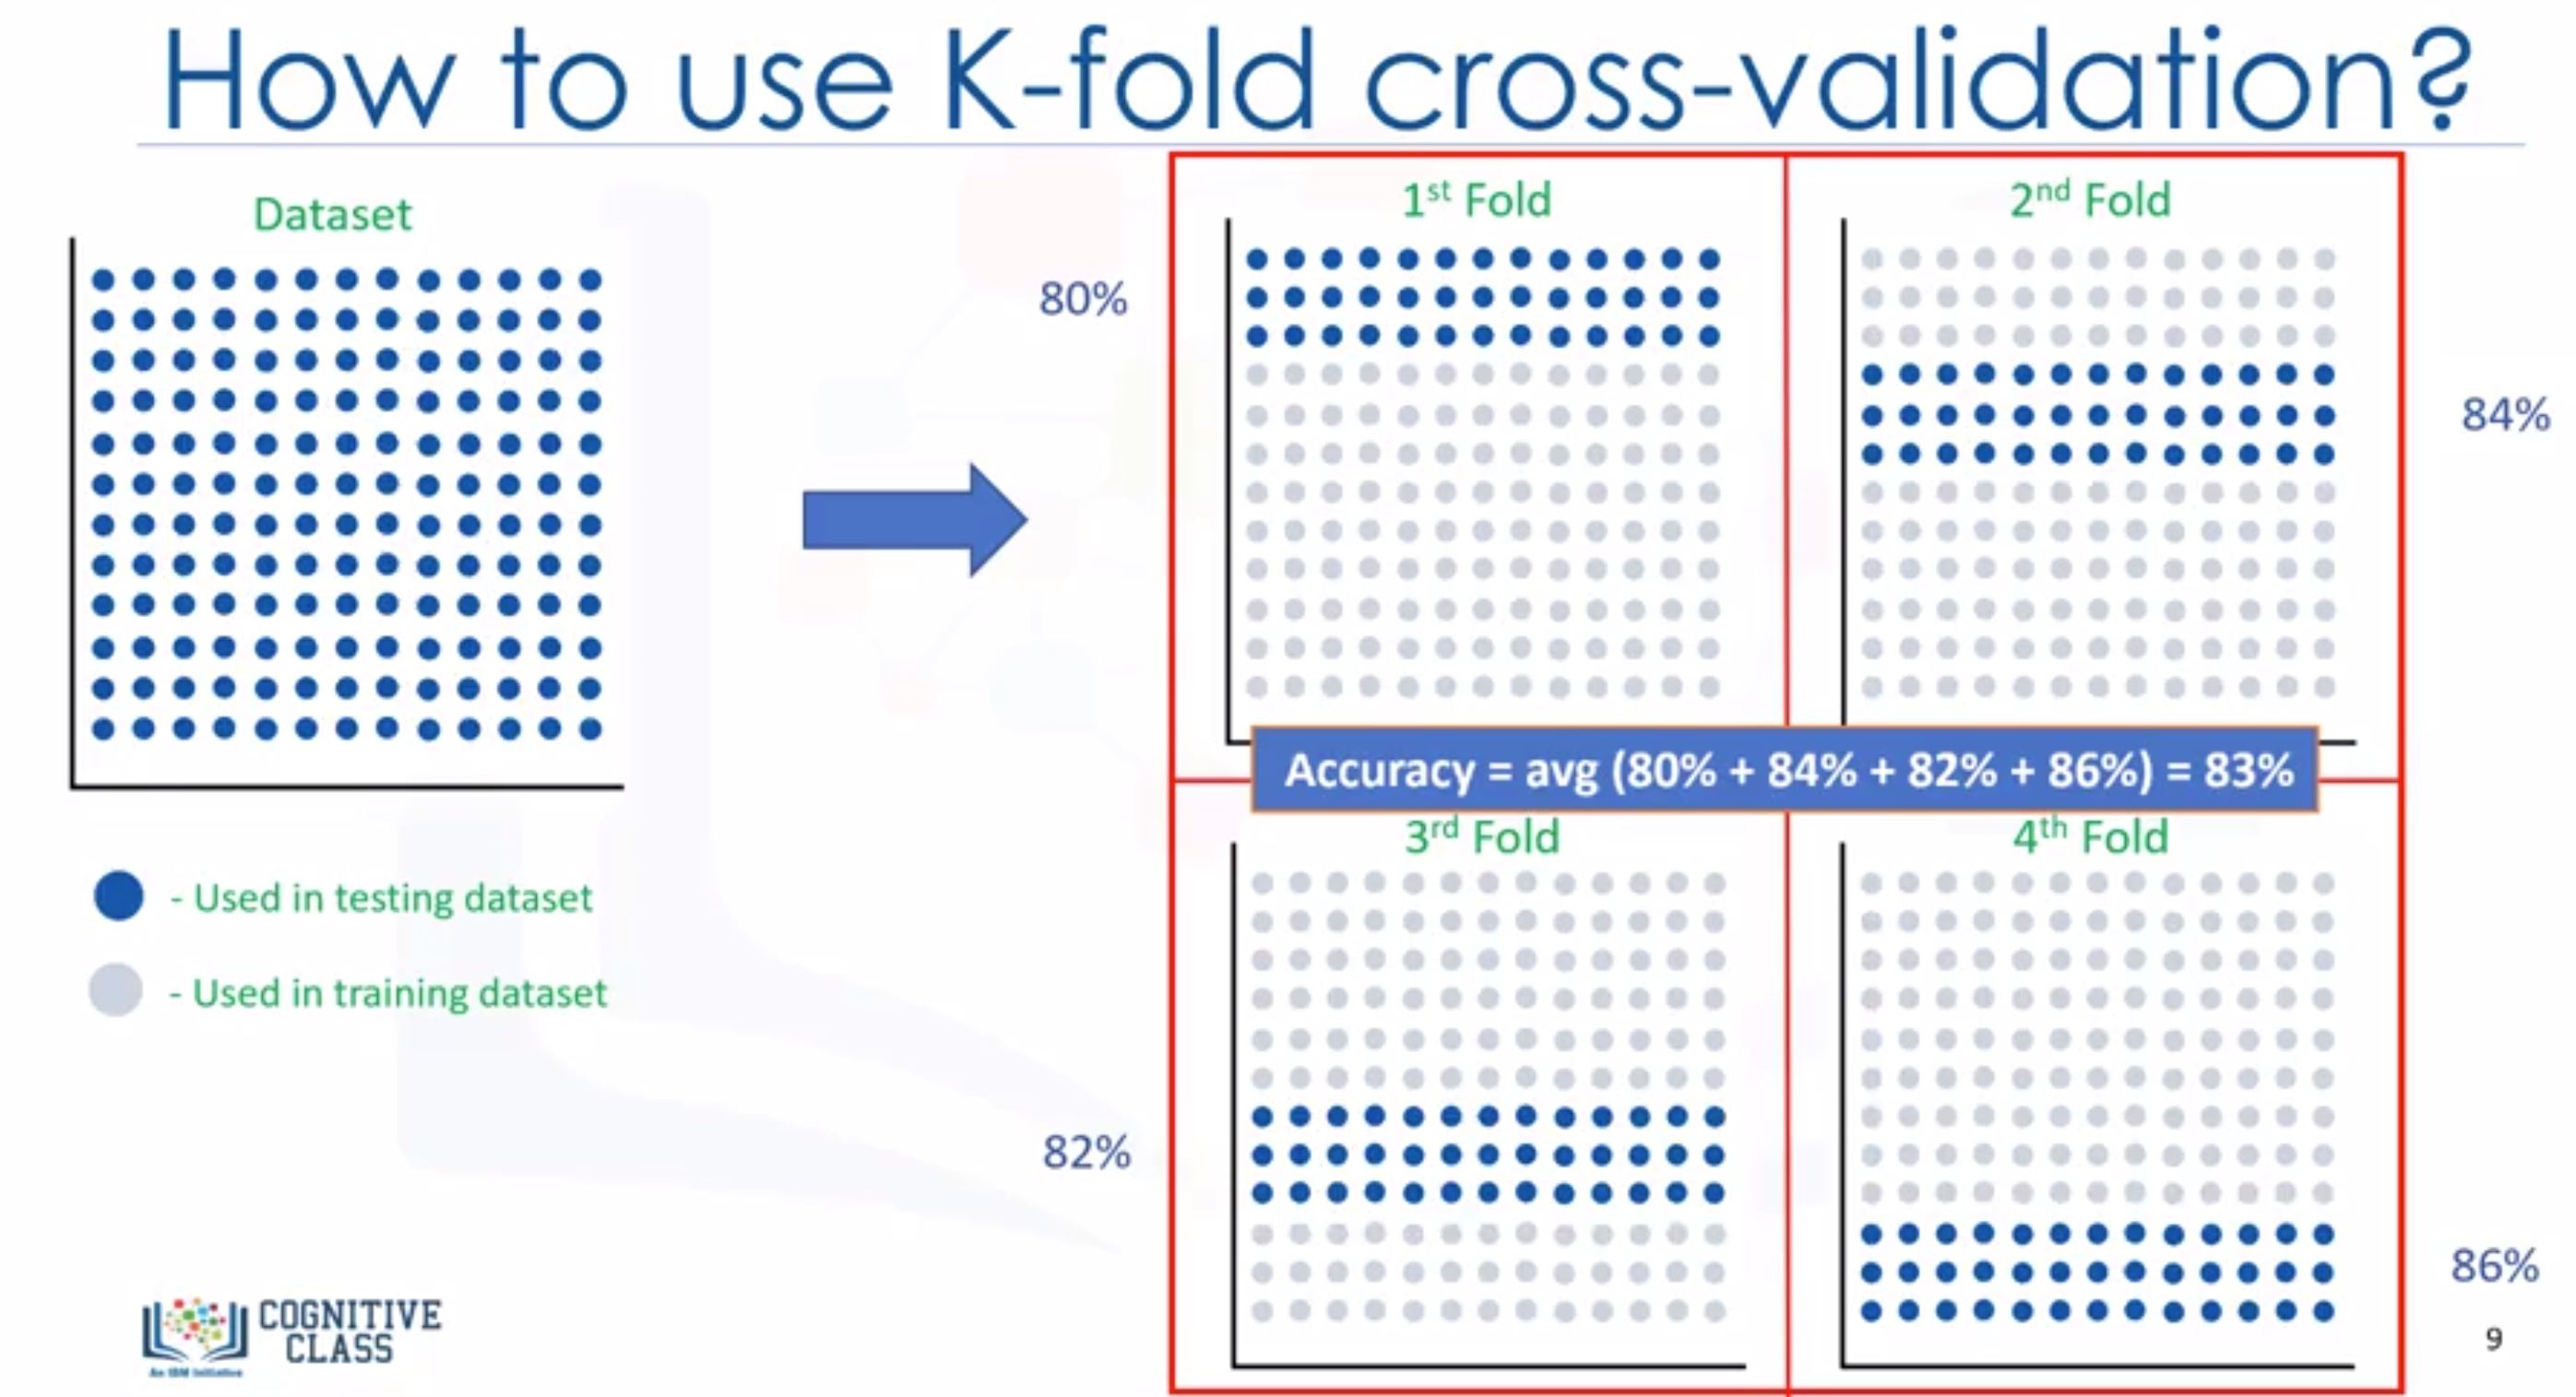 K-fold cross-validation